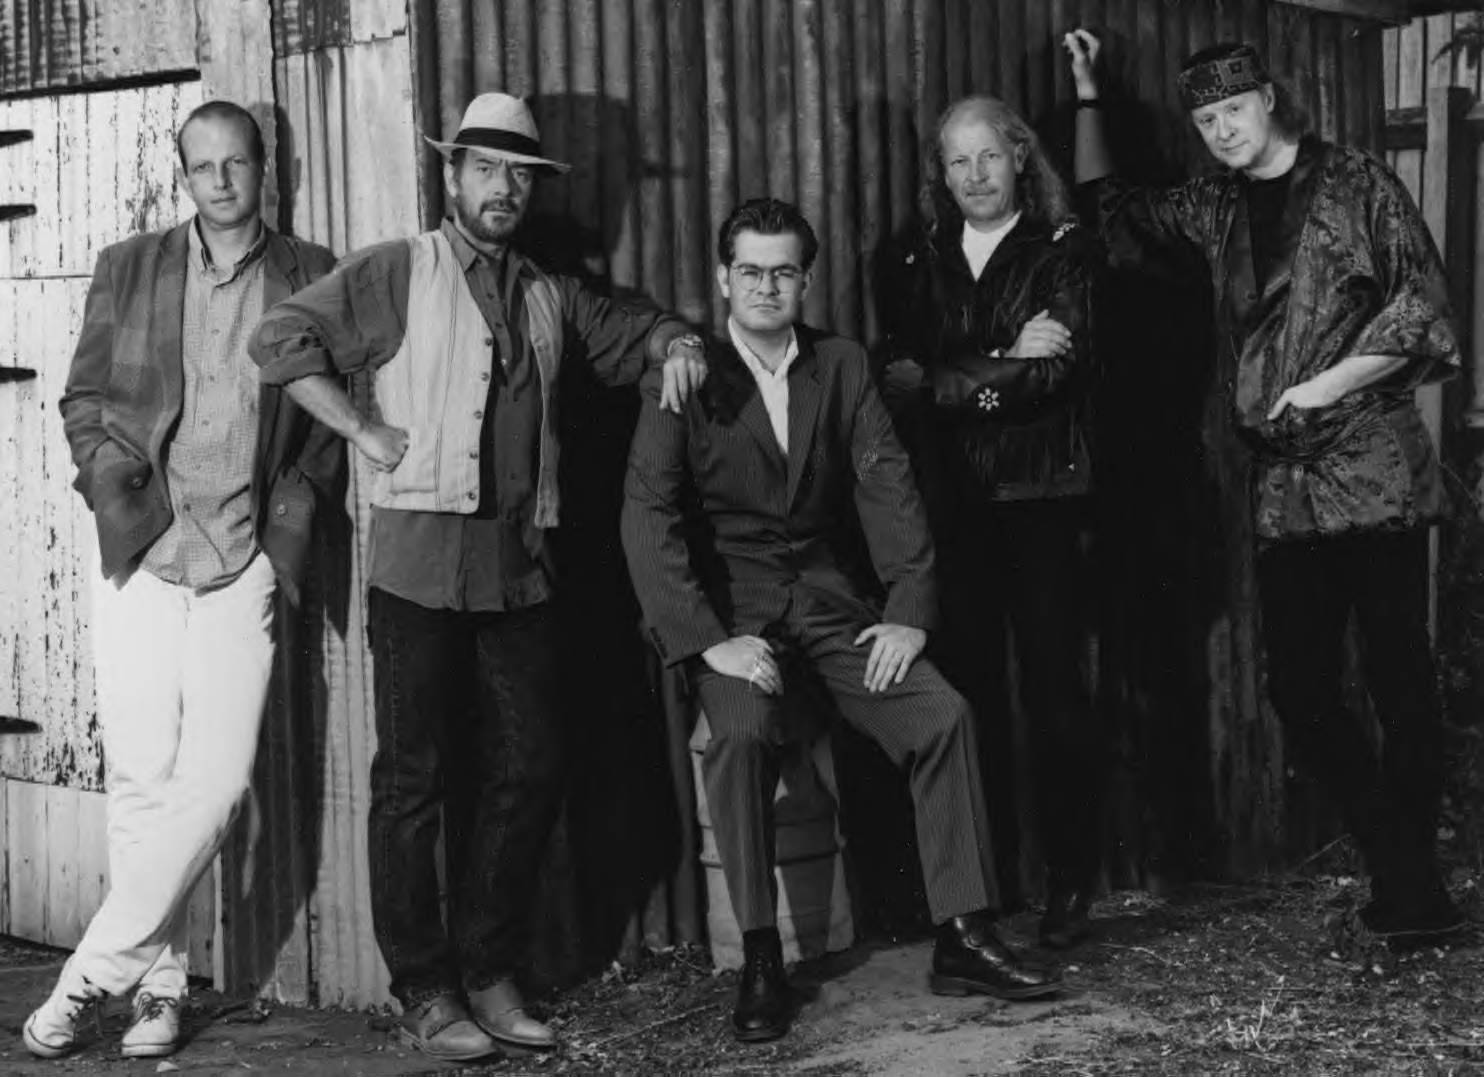 Iconicaband Inglese Di Folk Rock, Jethro Tull, In Una Fotografia Classica In Bianco E Nero Sfondo